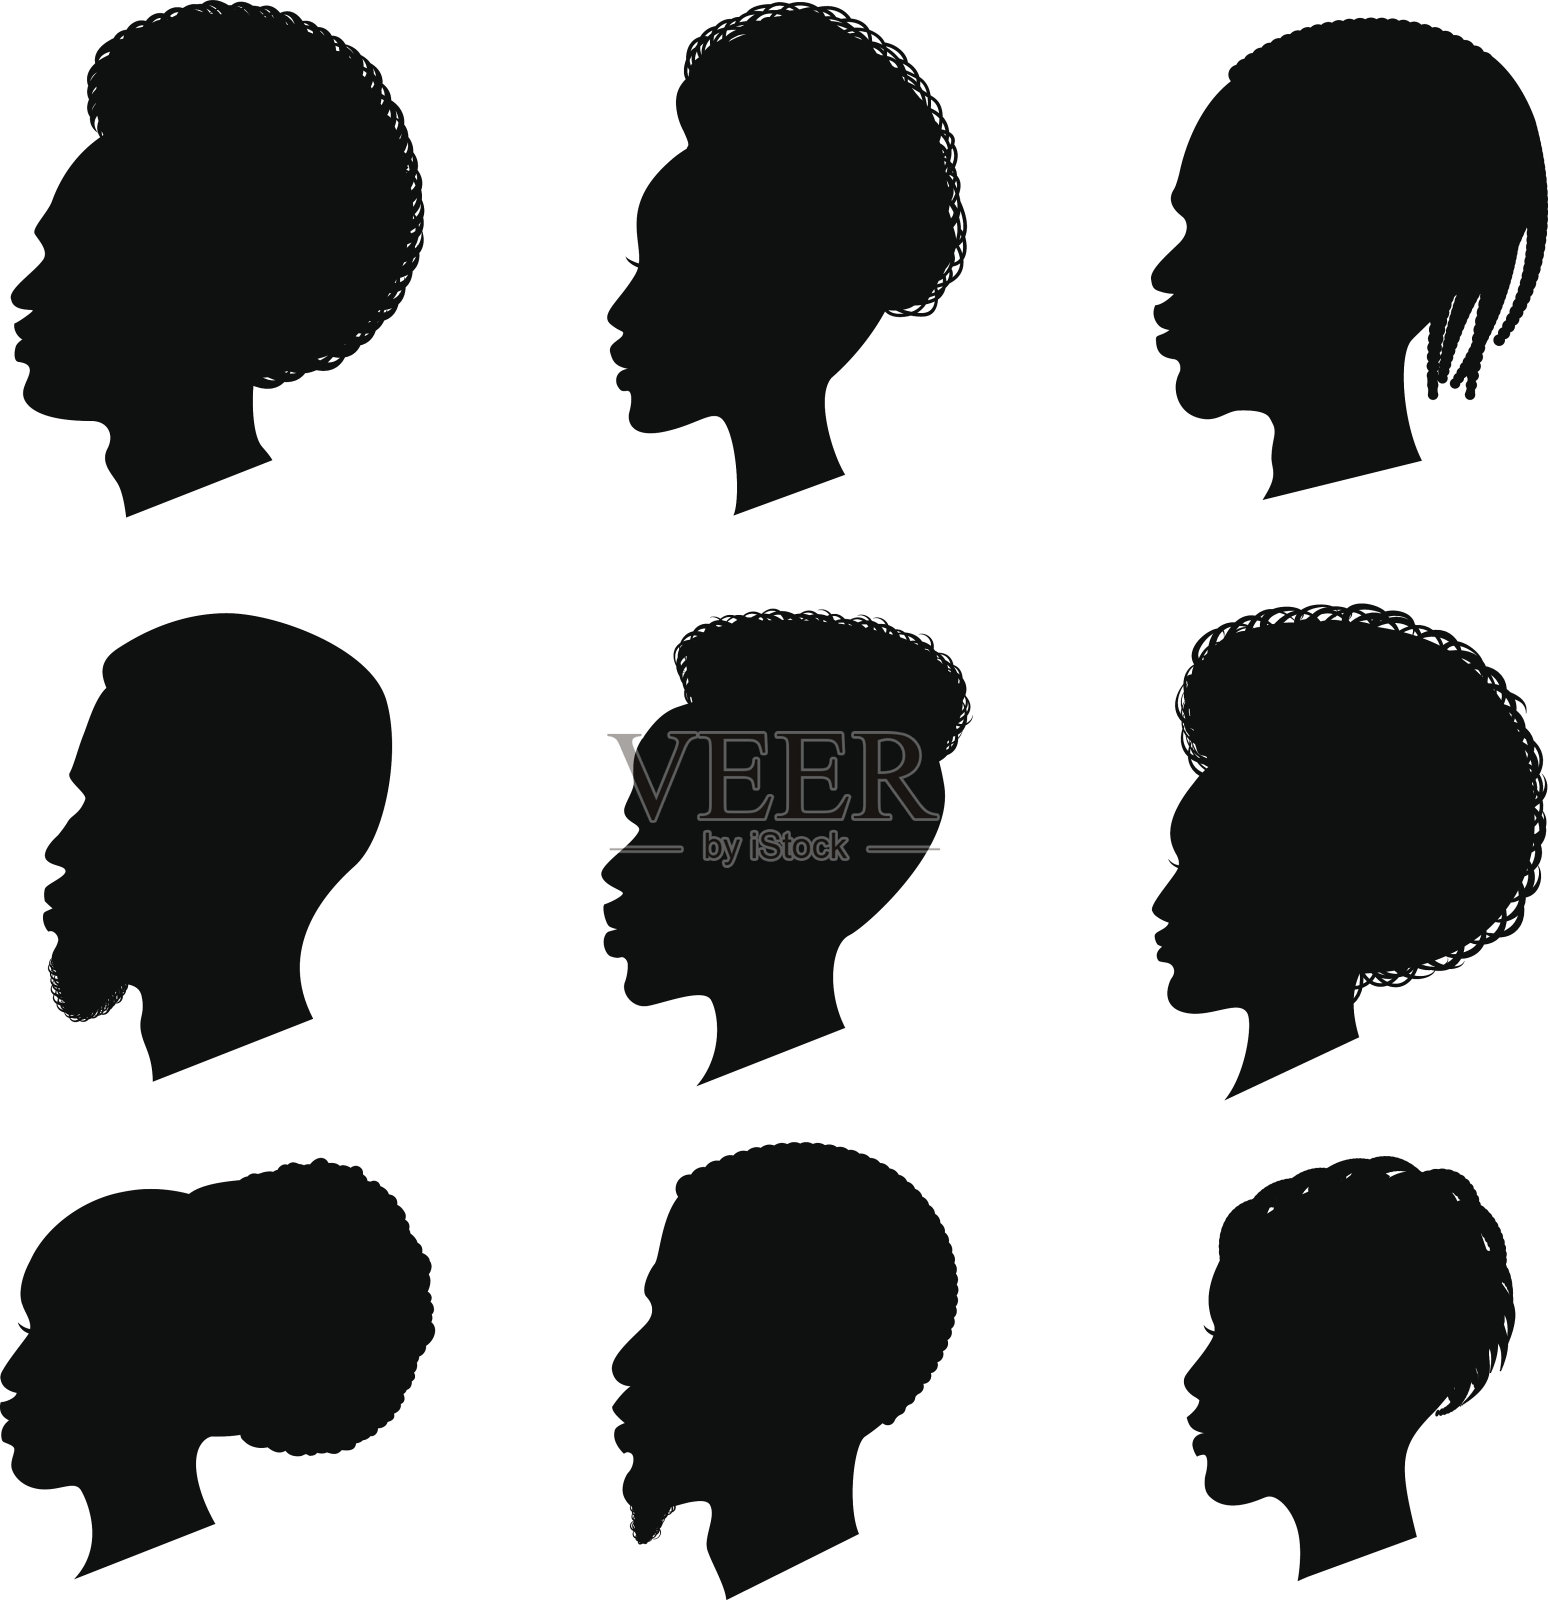 非洲人黑色剪影集插画图片素材